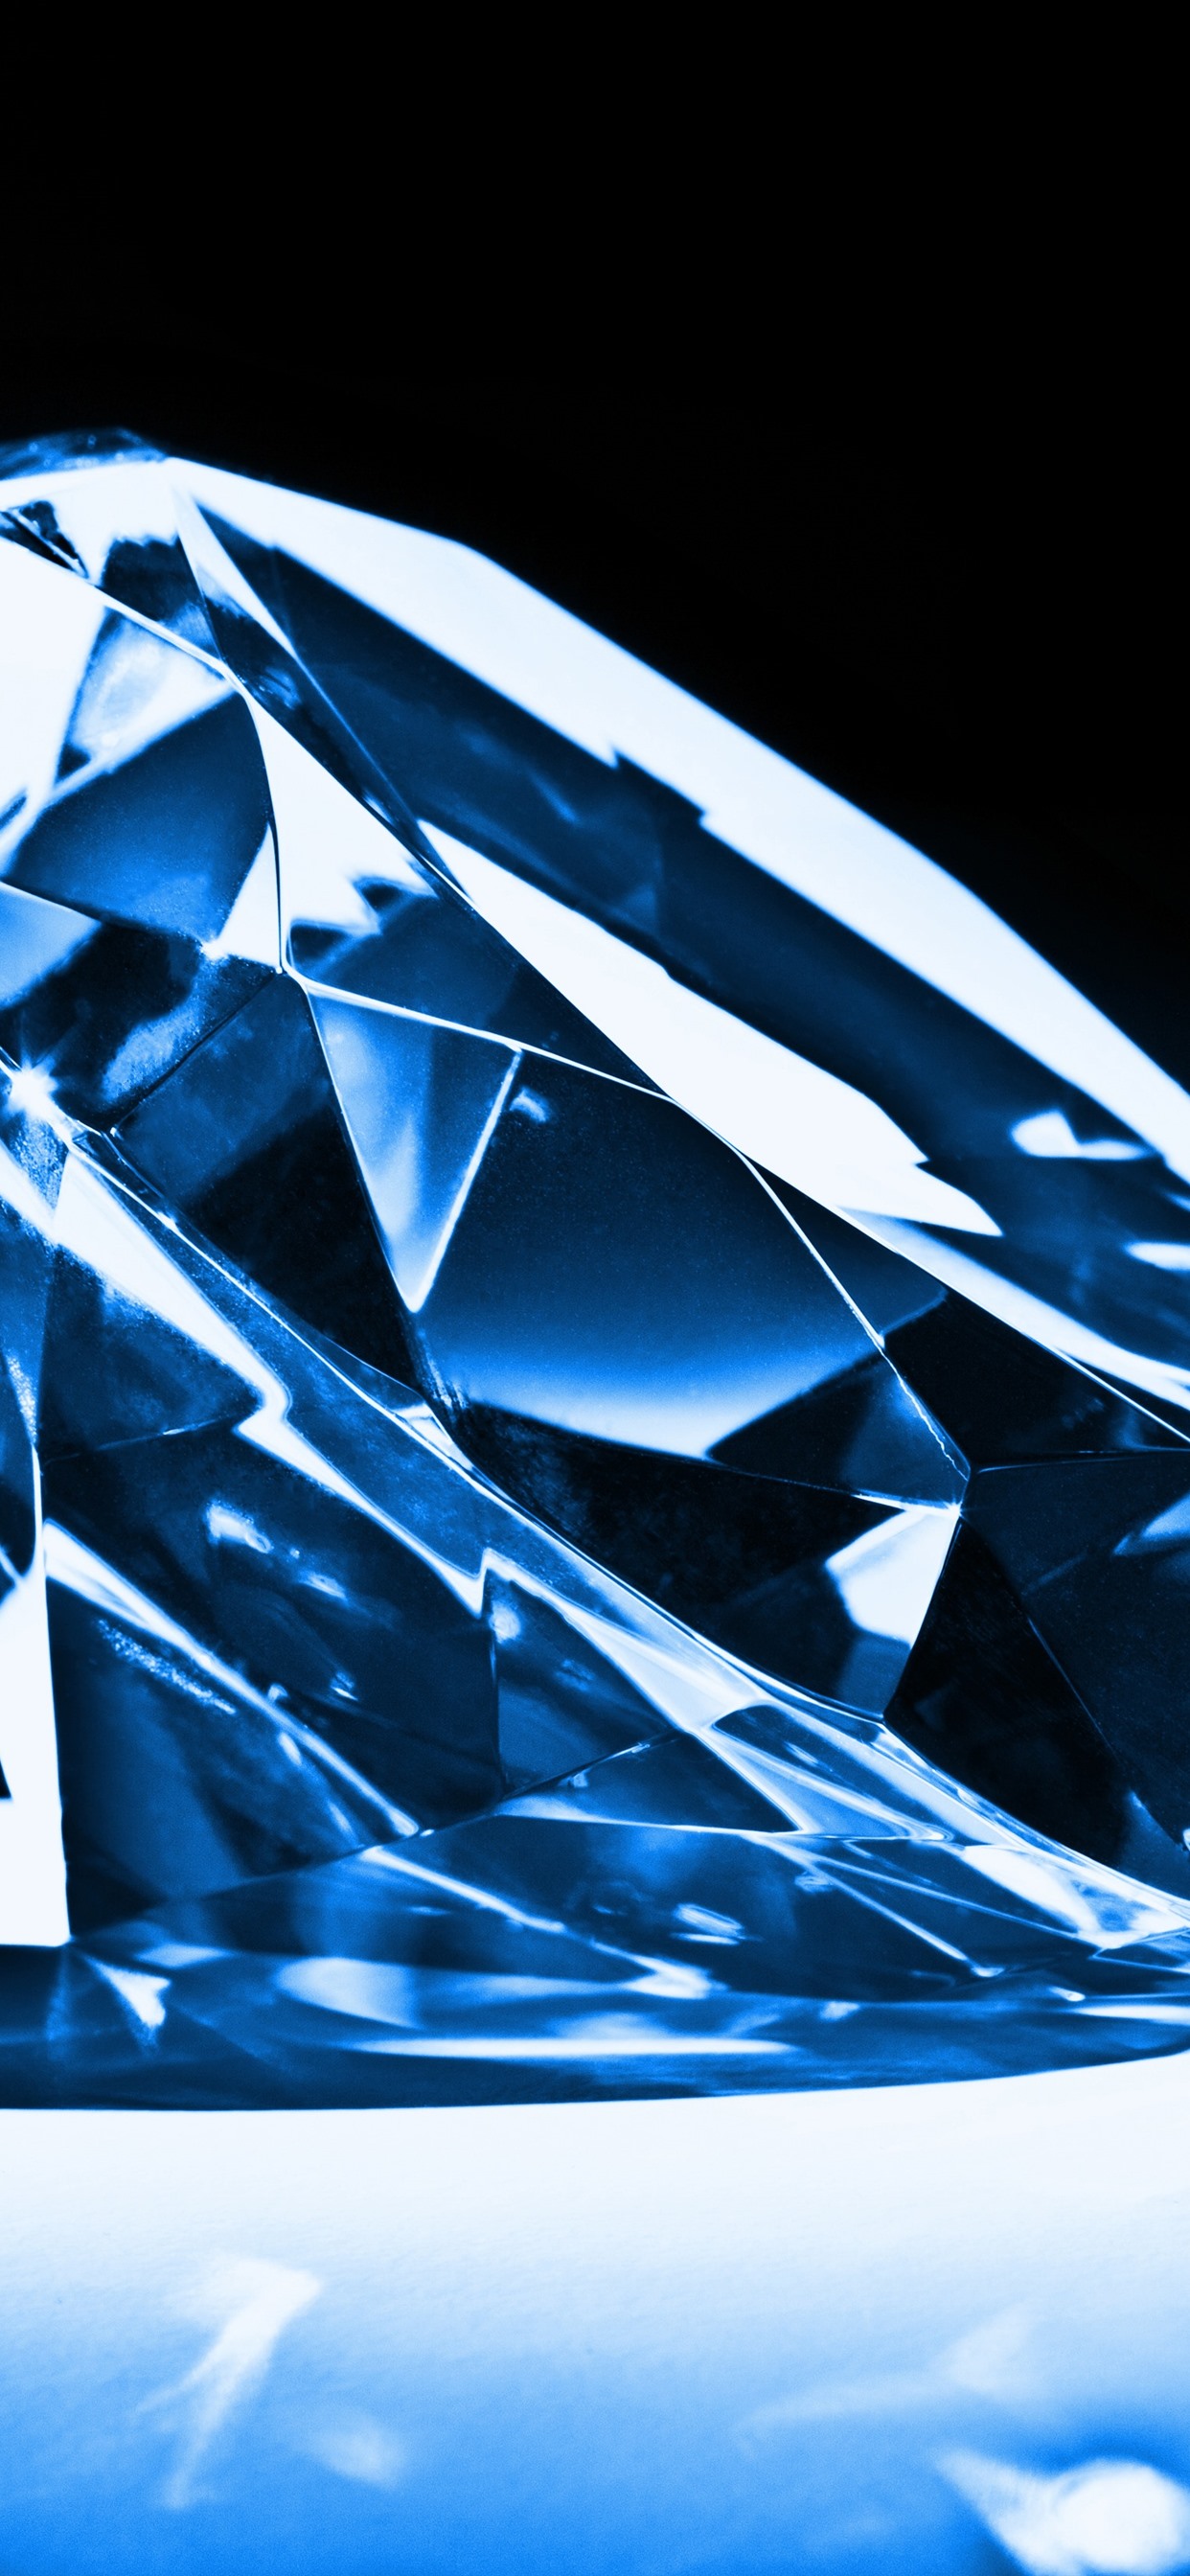 papel pintado de diamantes,azul,azul cobalto,diamante,azul eléctrico,modelo